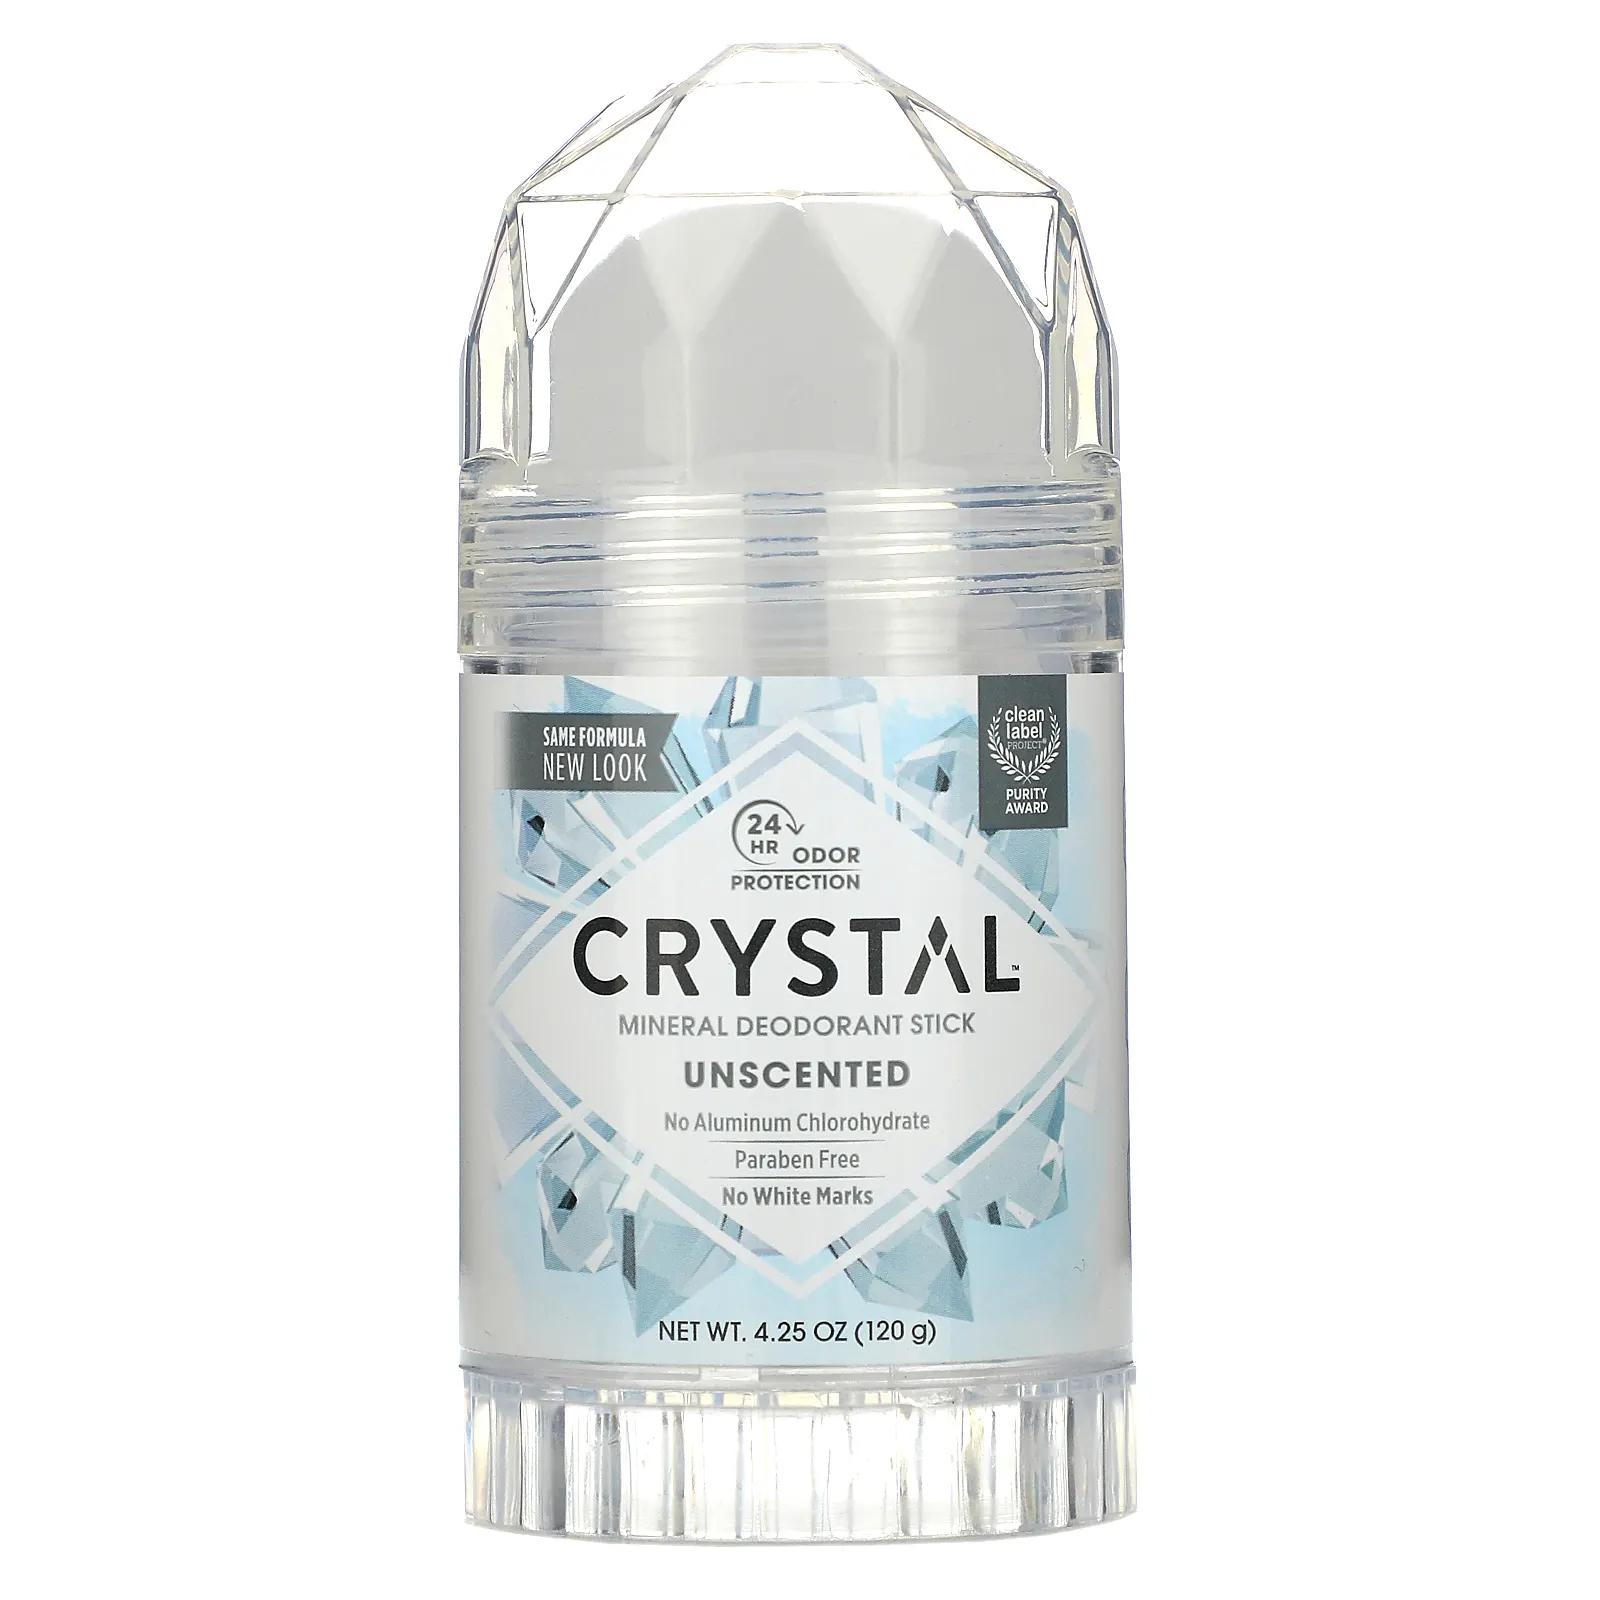 Crystal Body Deodorant Минеральный твердый дезодорант Без запаха 4,25 унц. (120 г)